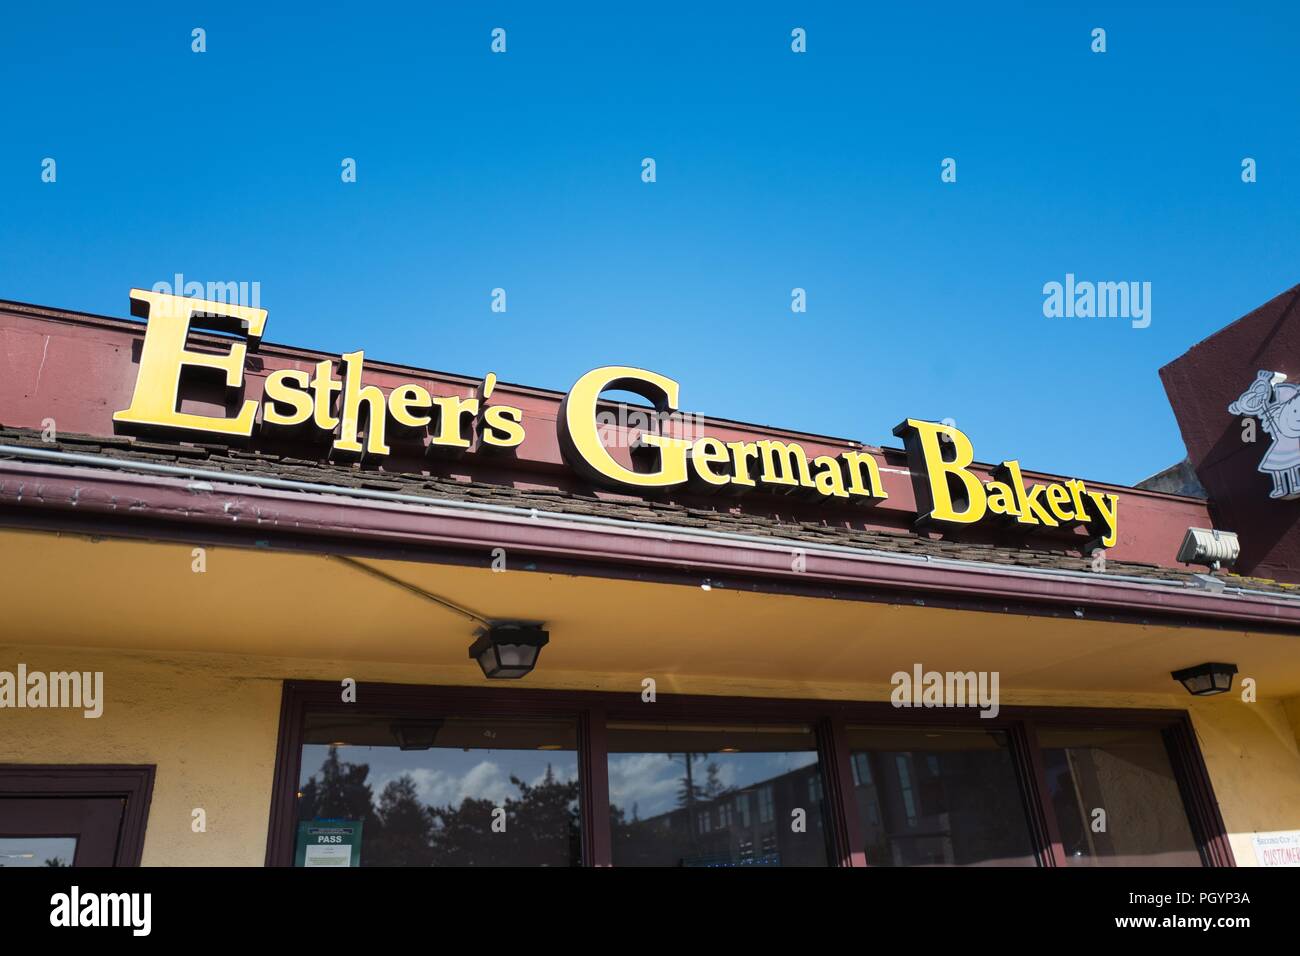 Inscrivez-vous sur façade d'Esther's German Bakery, un restaurant servant une cuisine allemande et une boulangerie qui est populaire parmi les travailleurs de la technologie et il est connu pour être un favori de Mark Zuckerberg, fondateur de Facebook, dans la Silicon Valley, Los Altos, Californie, le 30 mai 2018. () Banque D'Images